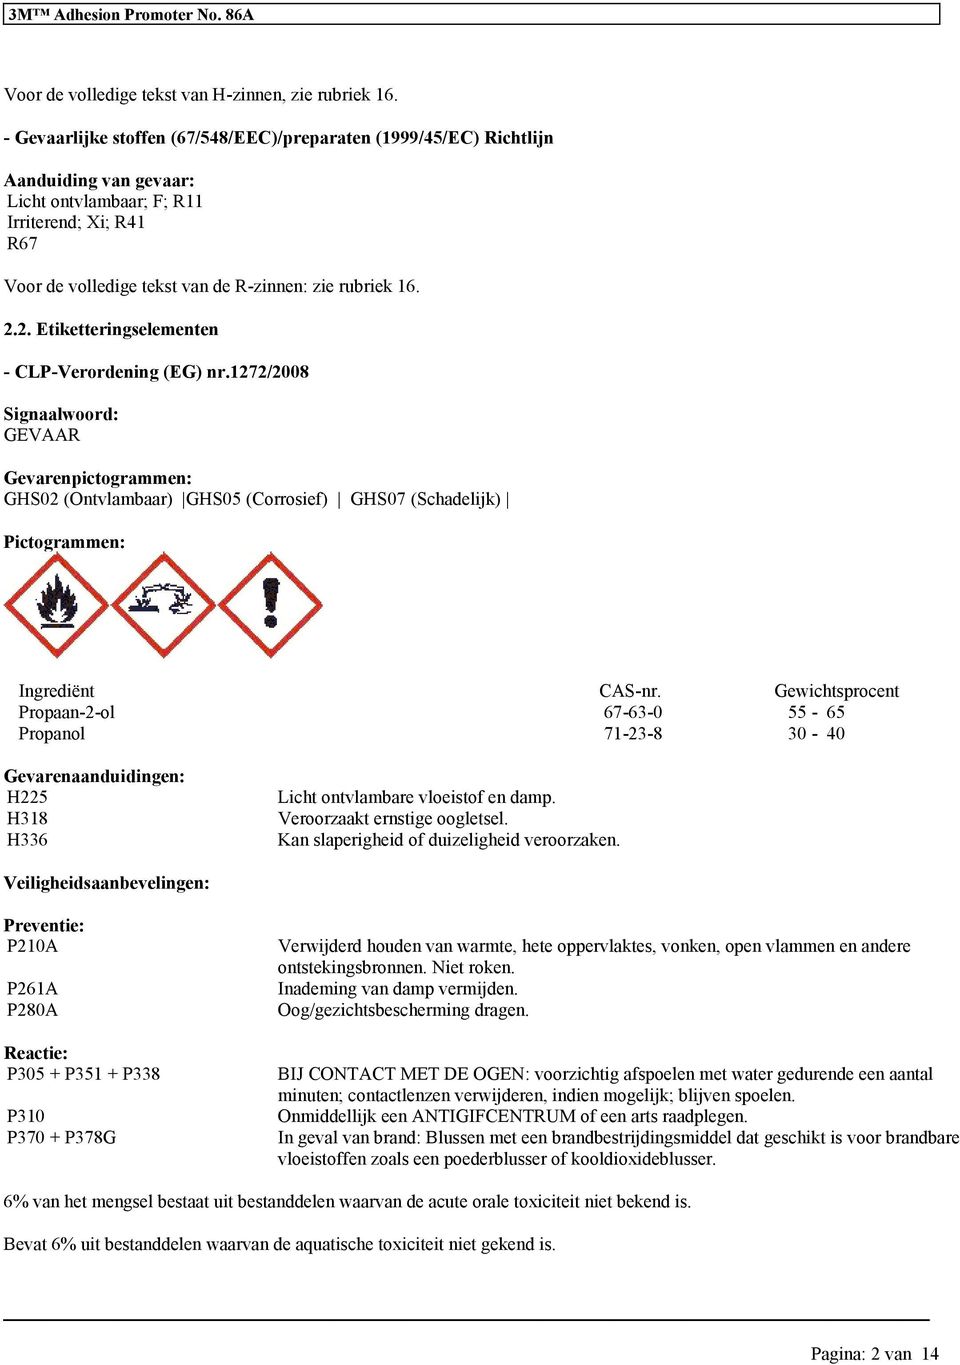 2. Etiketterinselementen - CLP-Verordenin (EG) nr.1272/2008 Sinaalwoord: GEVAAR Gevarenpictorammen: GHS02 (Ontvlambaar) GHS05 (Corrosief) GHS07 (Schadelijk) Pictorammen: Inrediënt CAS-nr.